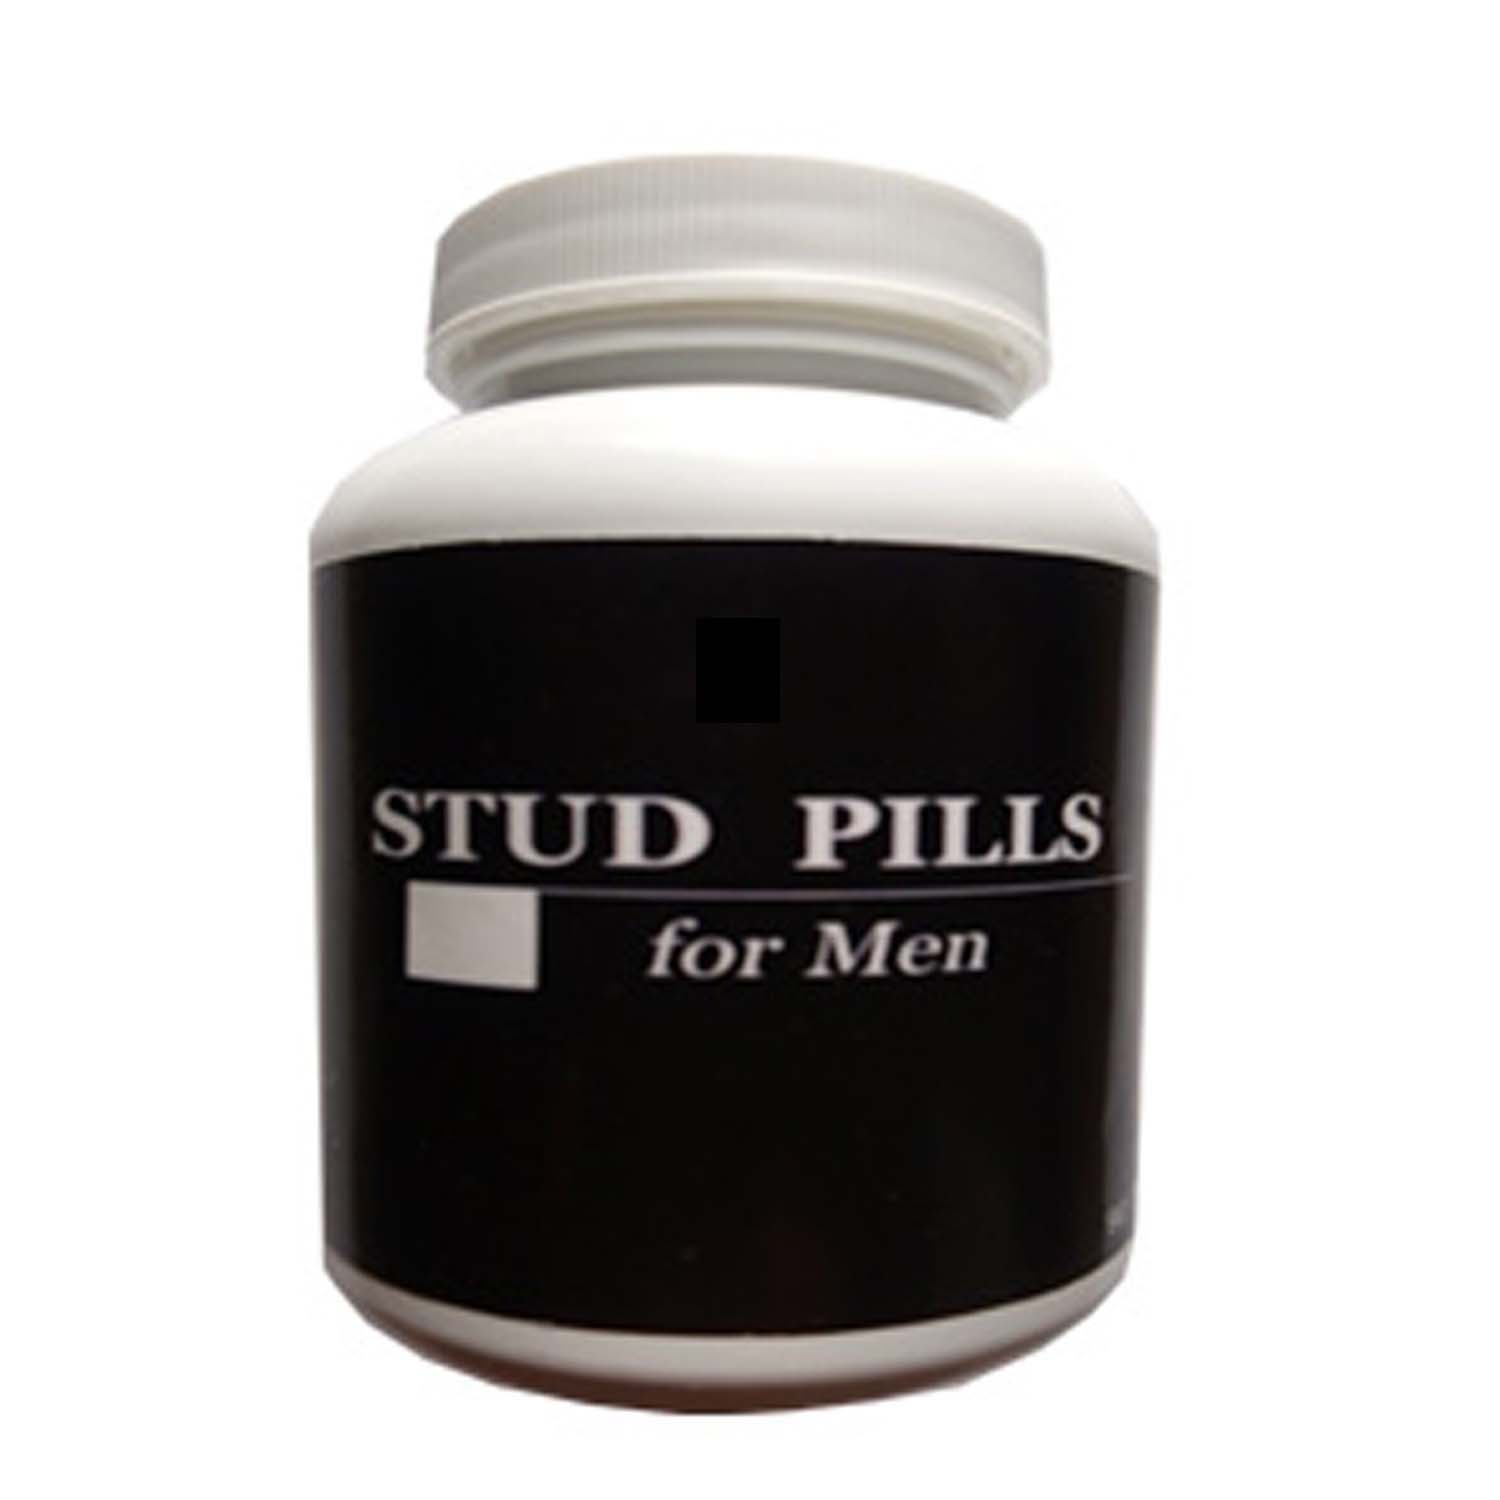  Stud Pills Allegro 